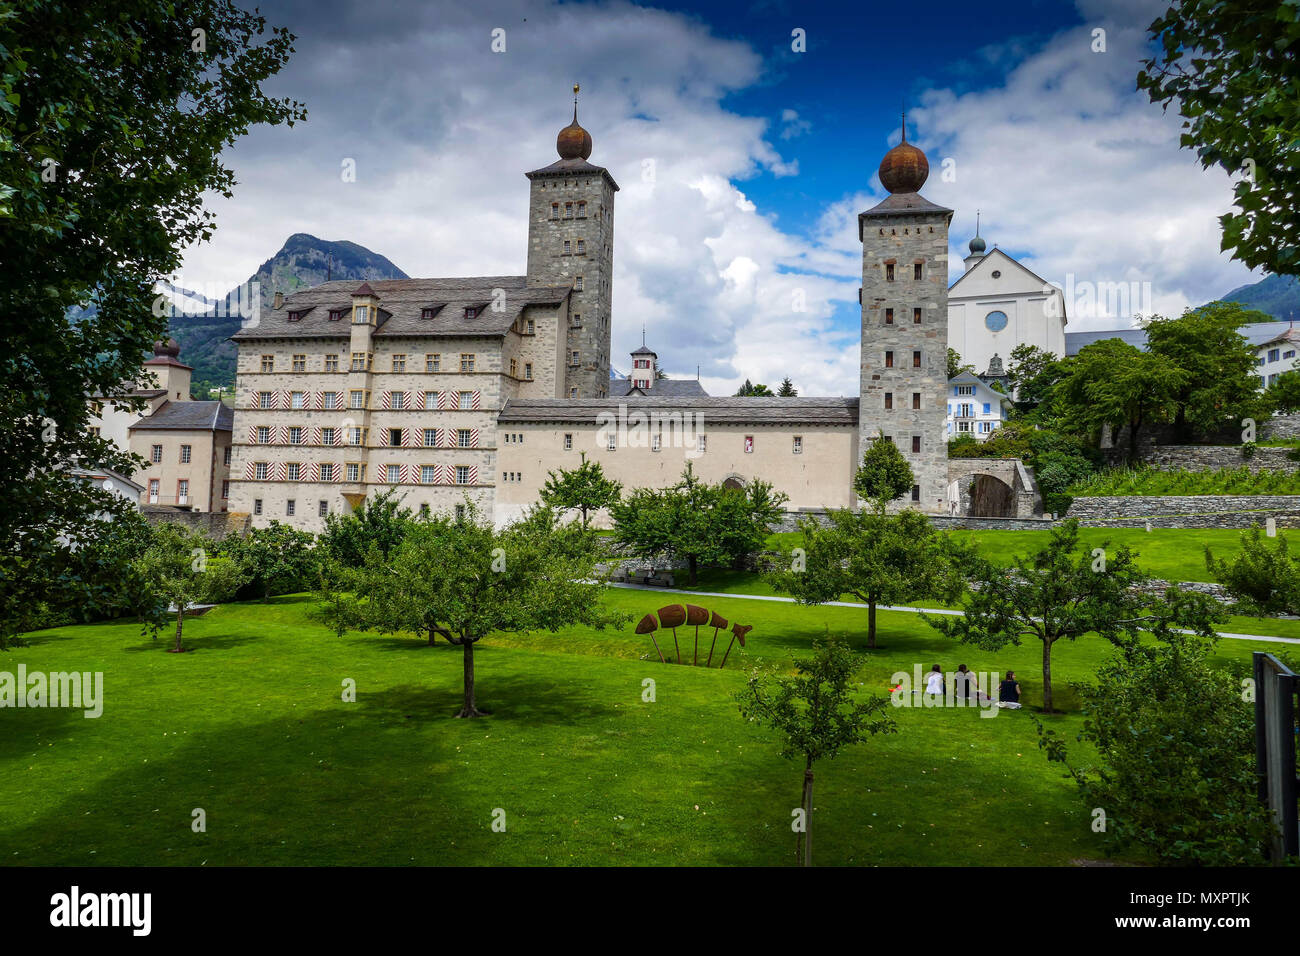 L'/ Stockalperpalast Stockalperpalast, château à Brig / Brig dans les Alpes Suisses, Valais / Wallis (Suisse) Banque D'Images